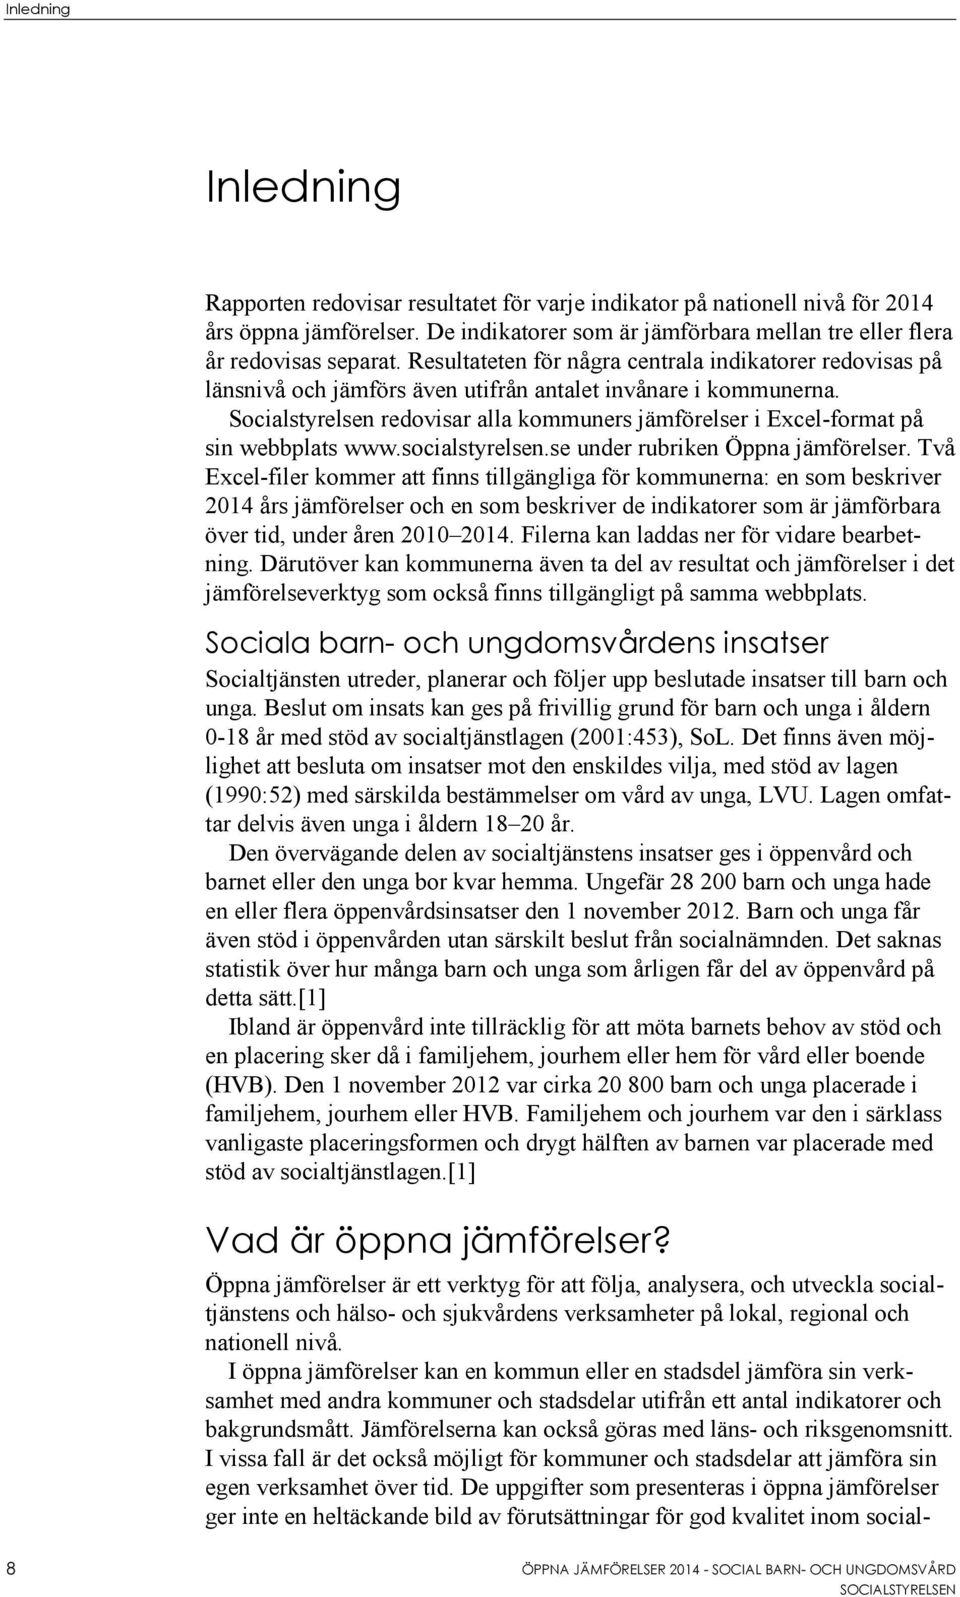 Socialstyrelsen redovisar alla kommuners jämförelser i Excel-format på sin webbplats www.socialstyrelsen.se under rubriken Öppna jämförelser.